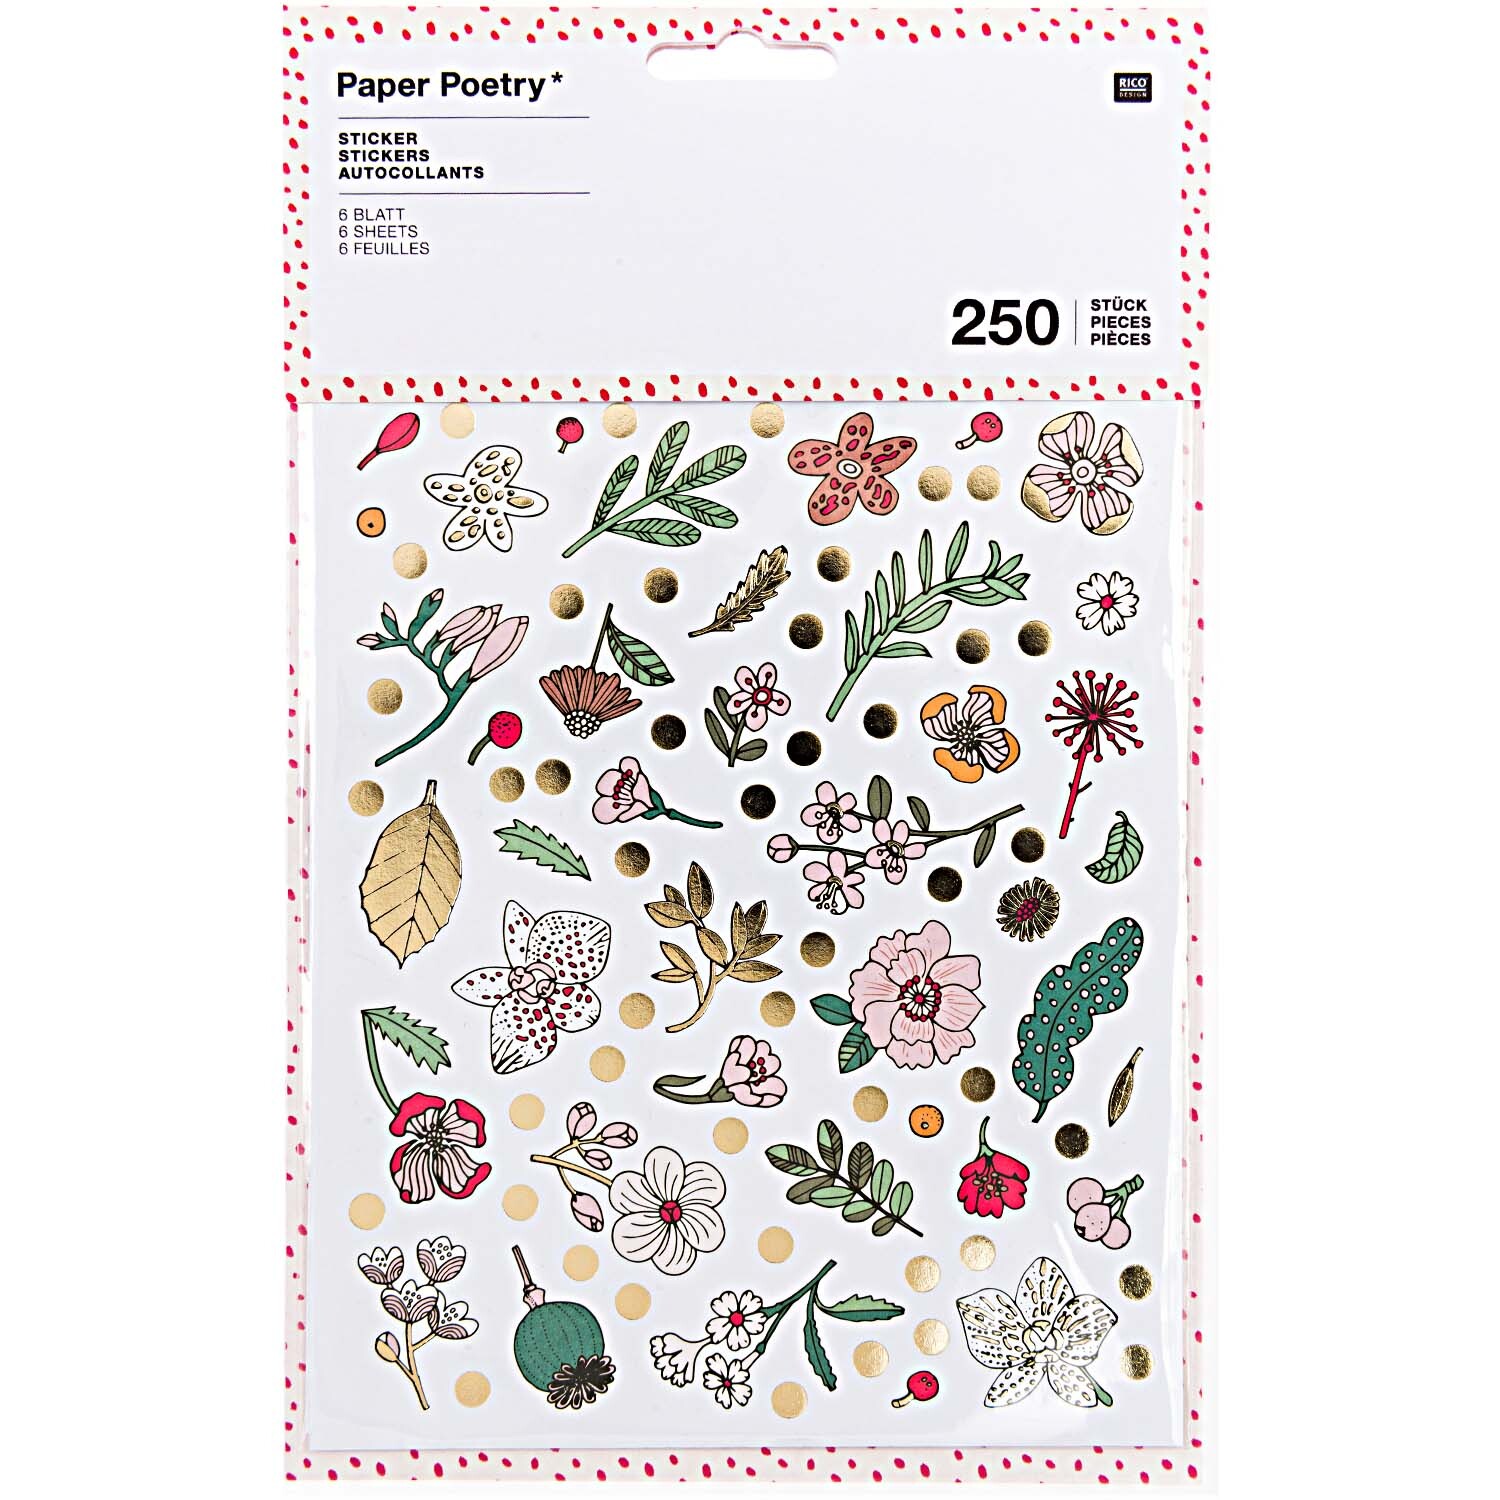 Paper Poetry Sticker Hygge Flowers 6 Blatt